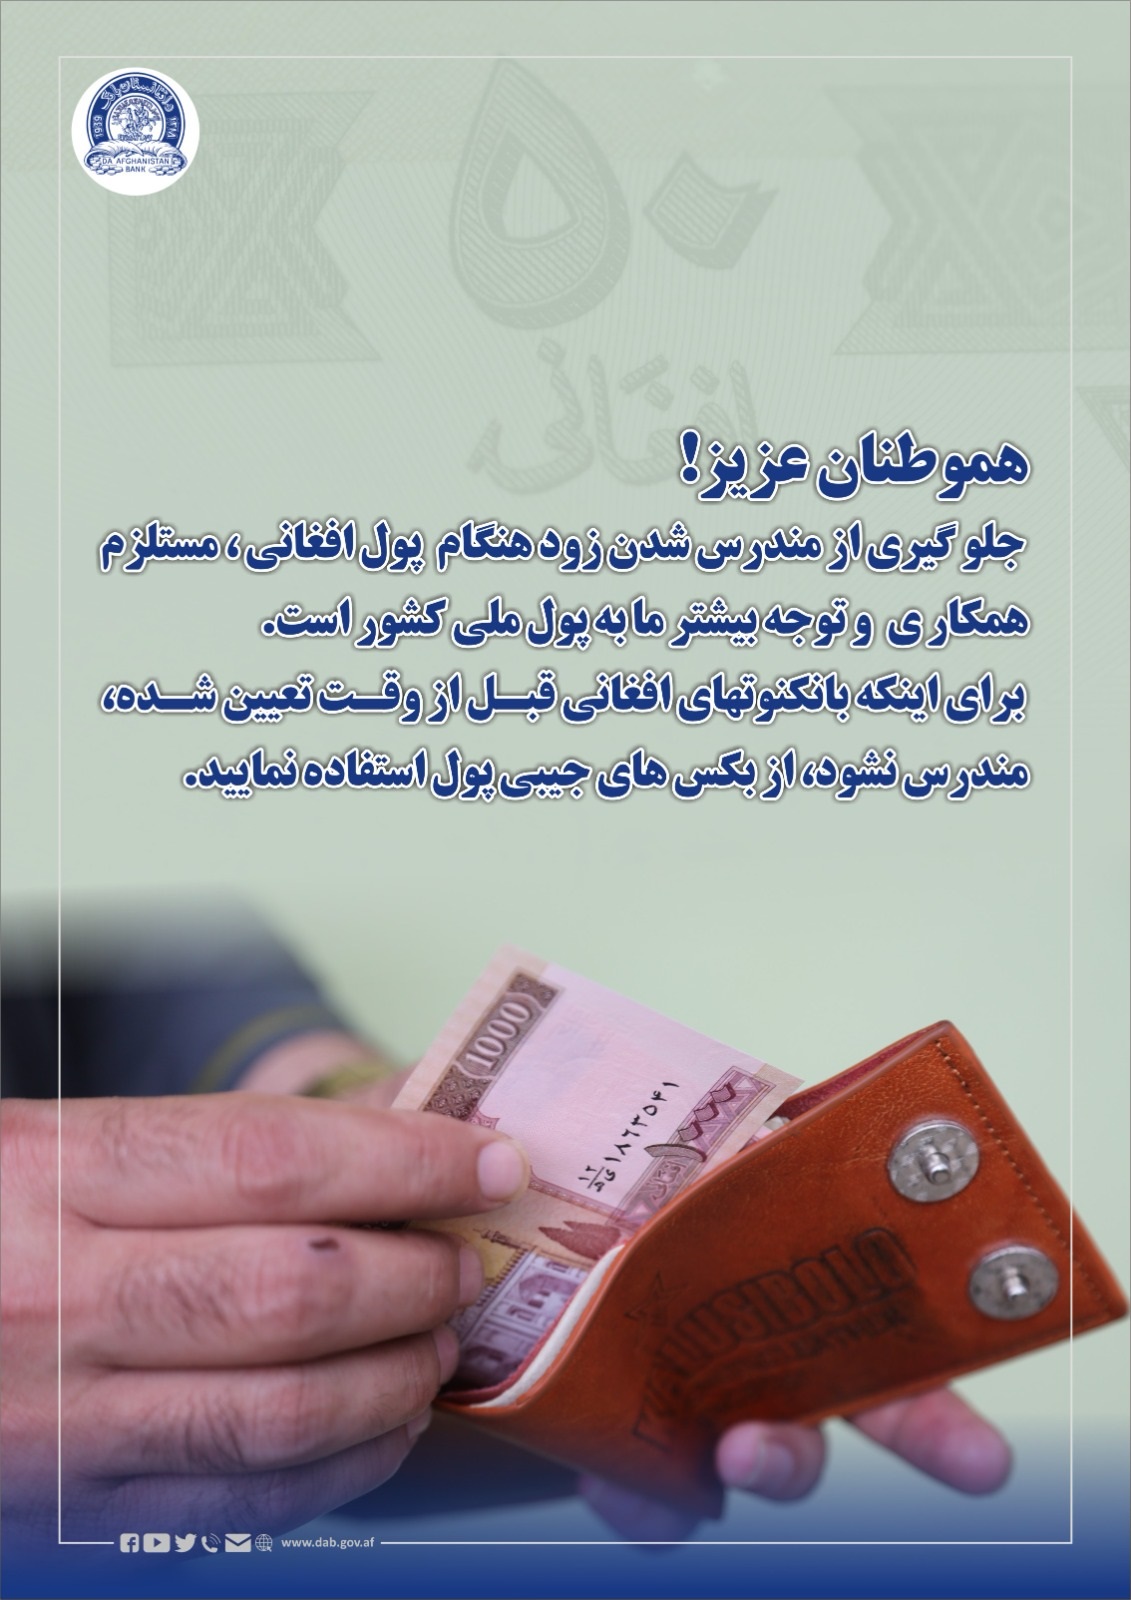 جلو گیری از مندرس شدن زود هنگام  پول افغانی 